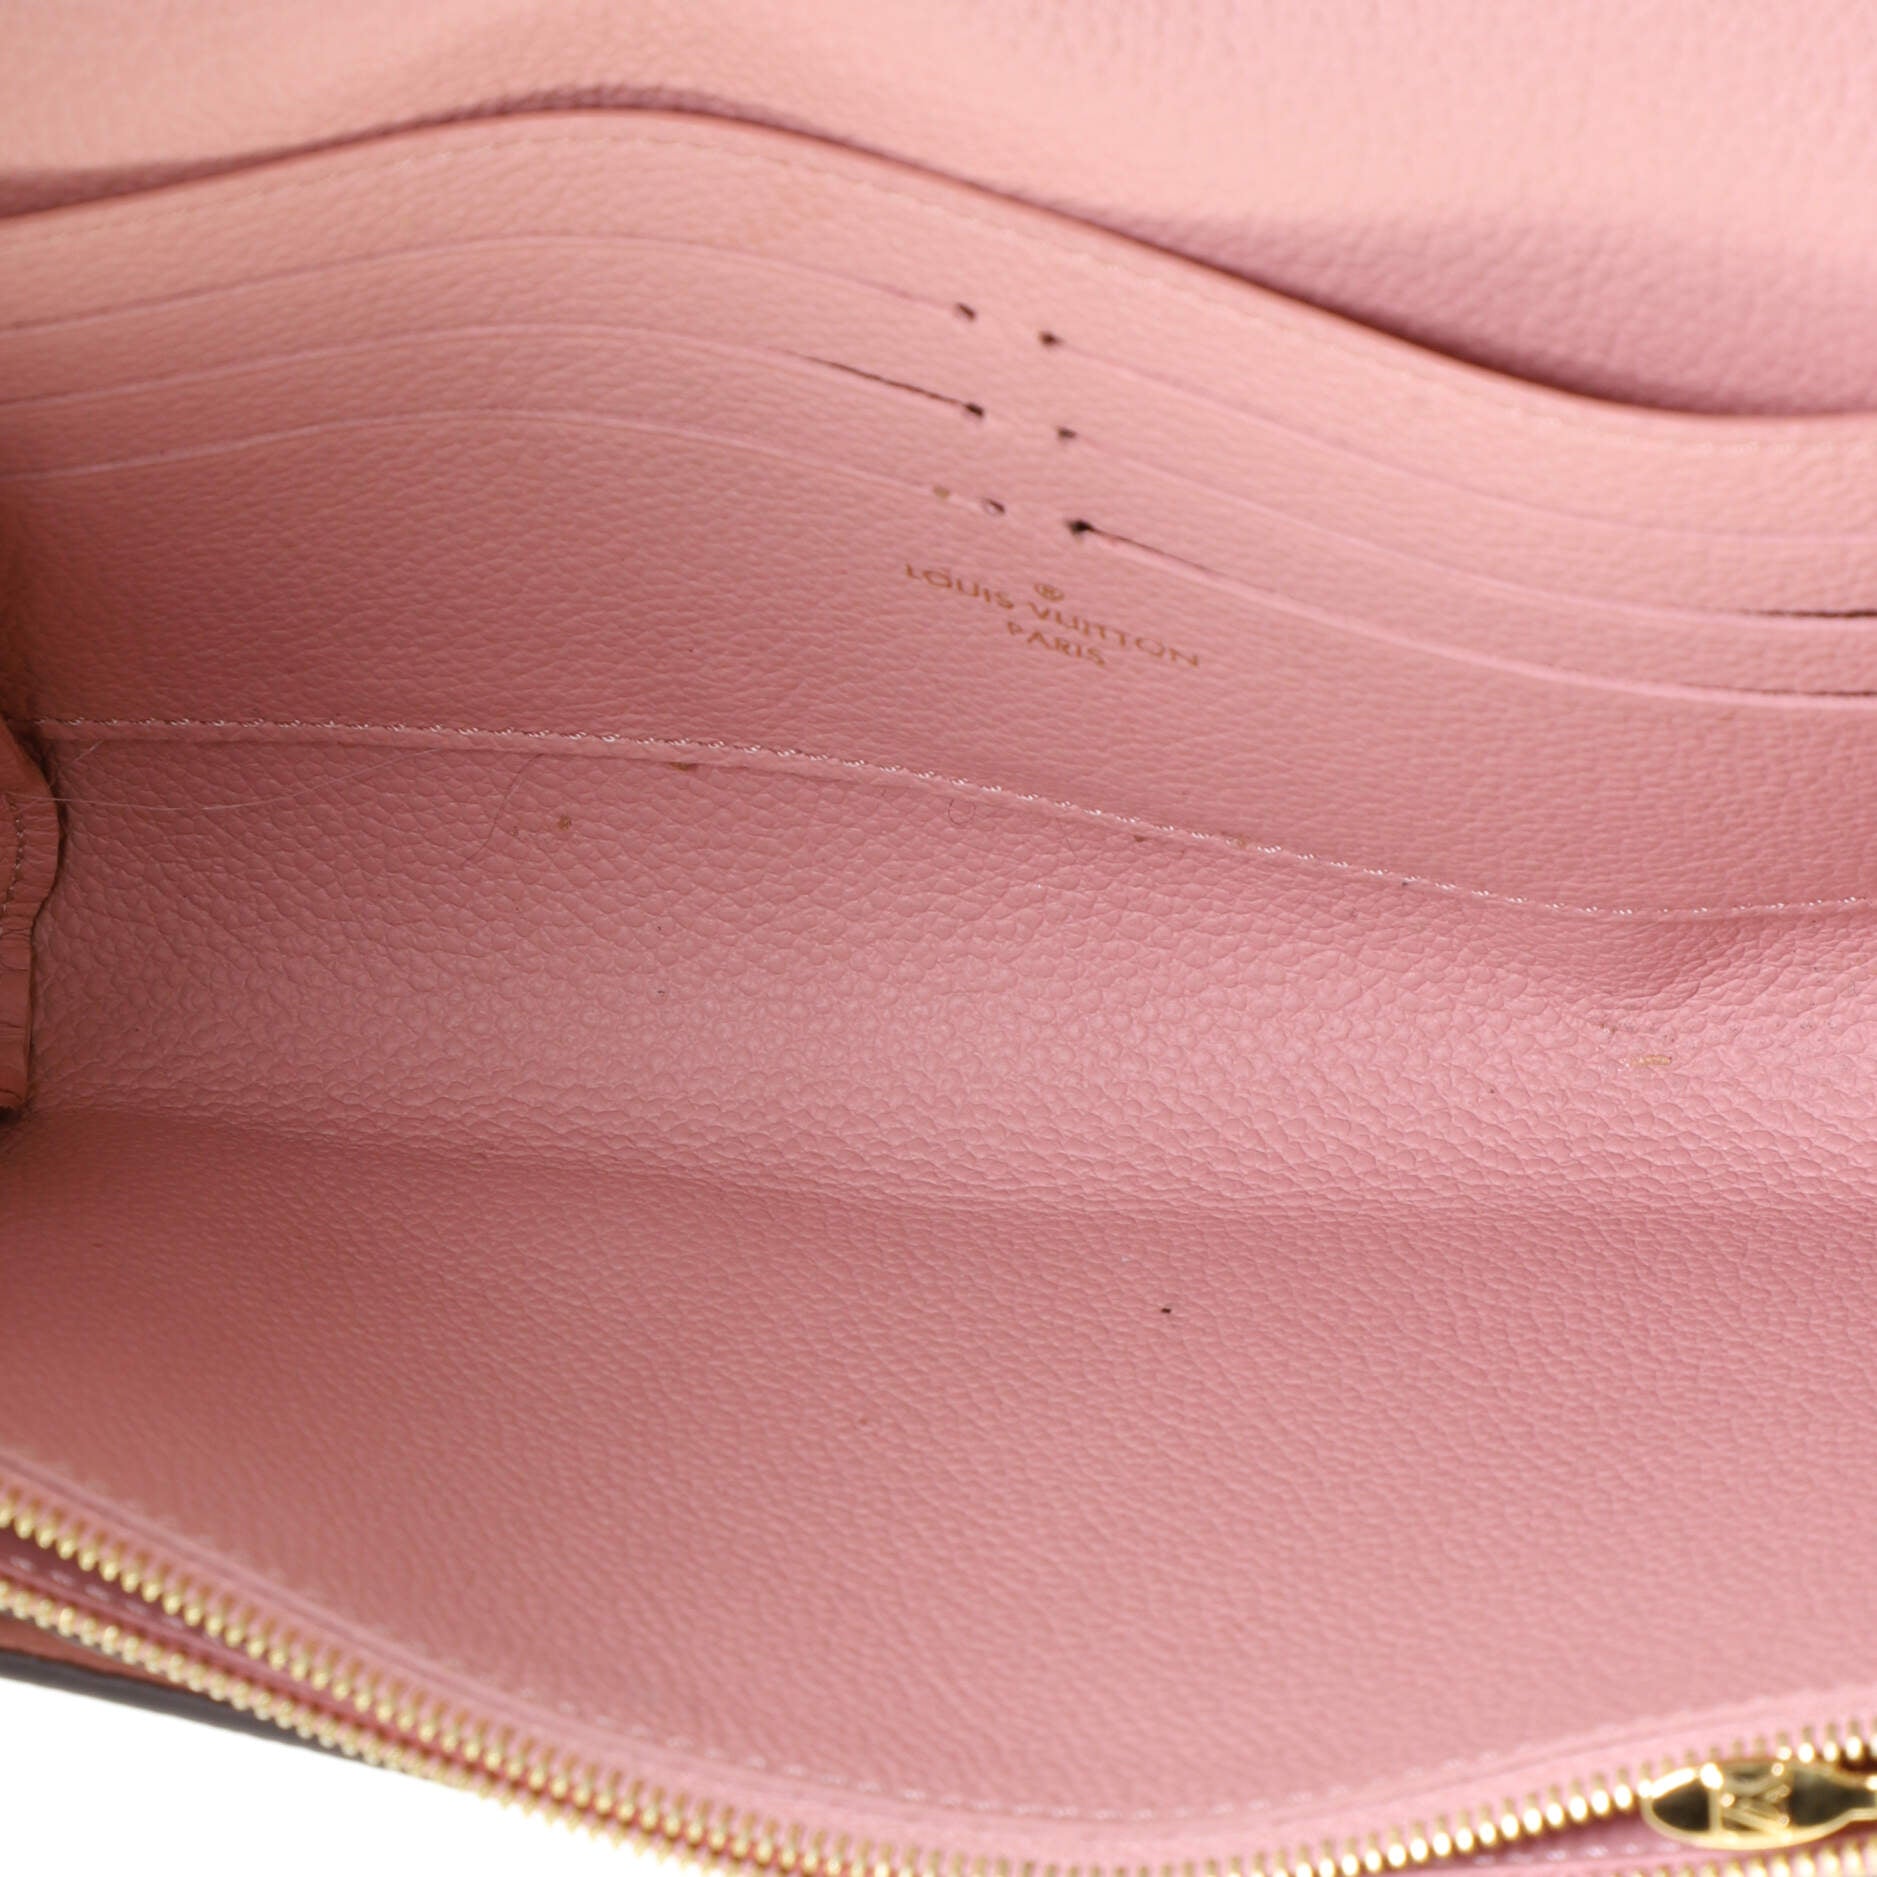 Louis Vuitton Vavin Chain Wallet Monogram Empreinte Leather Pink